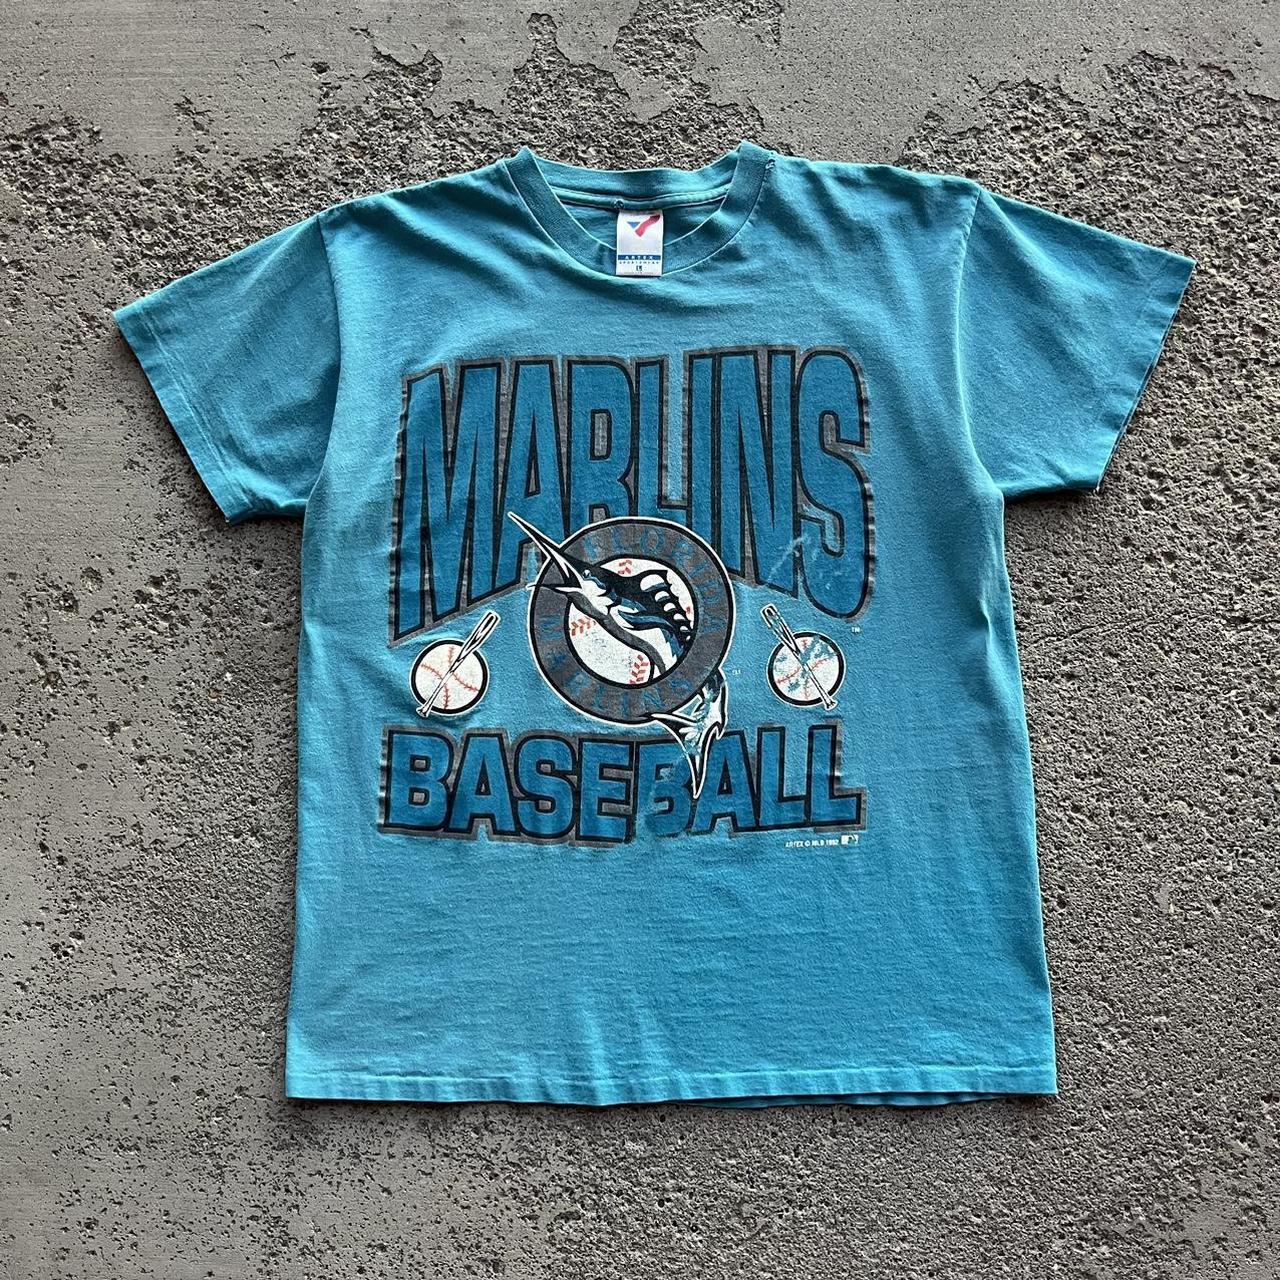 Blue Florida Marlins MLB Jerseys for sale